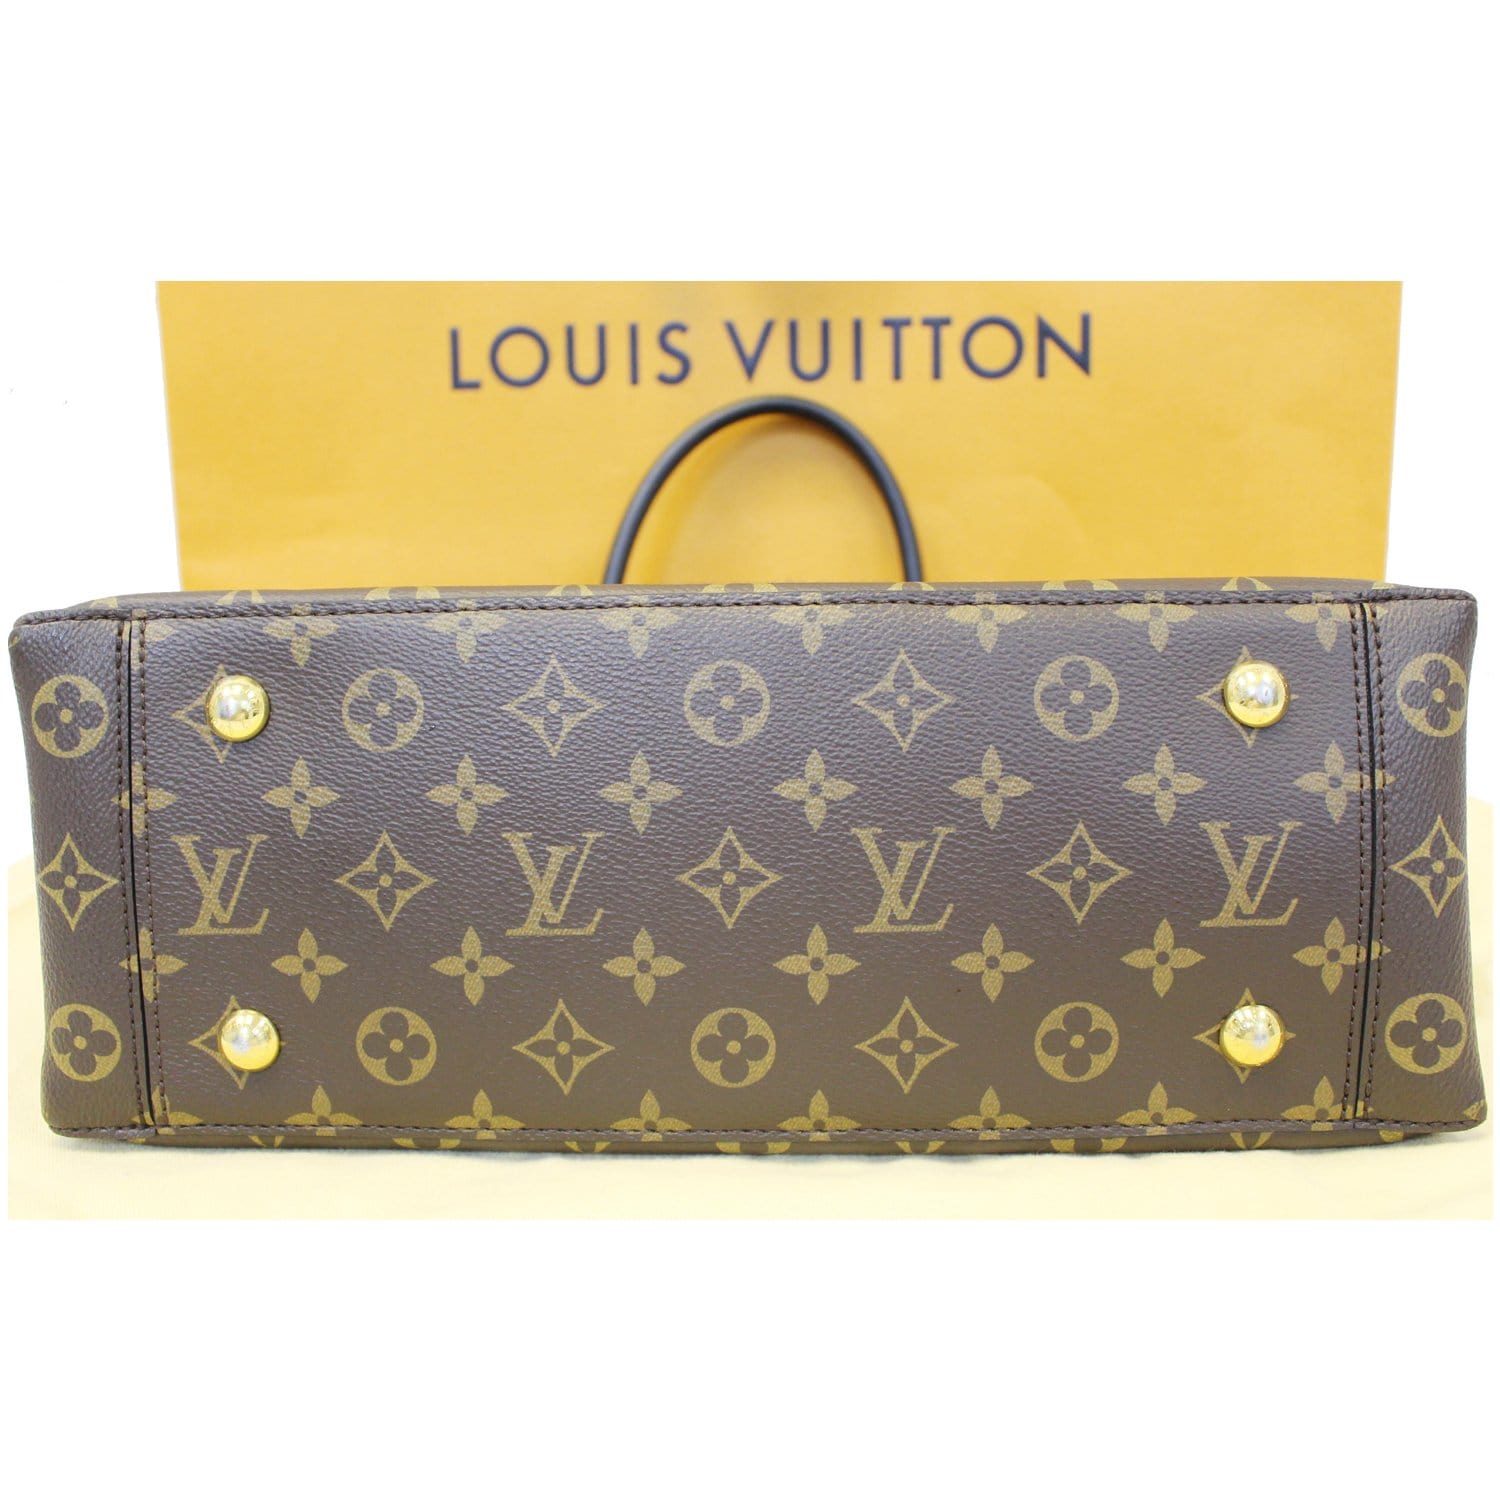 Louis Vuitton LA FABRIQUE DU TEMPS Catalog In Large Envelope￼ 2014.